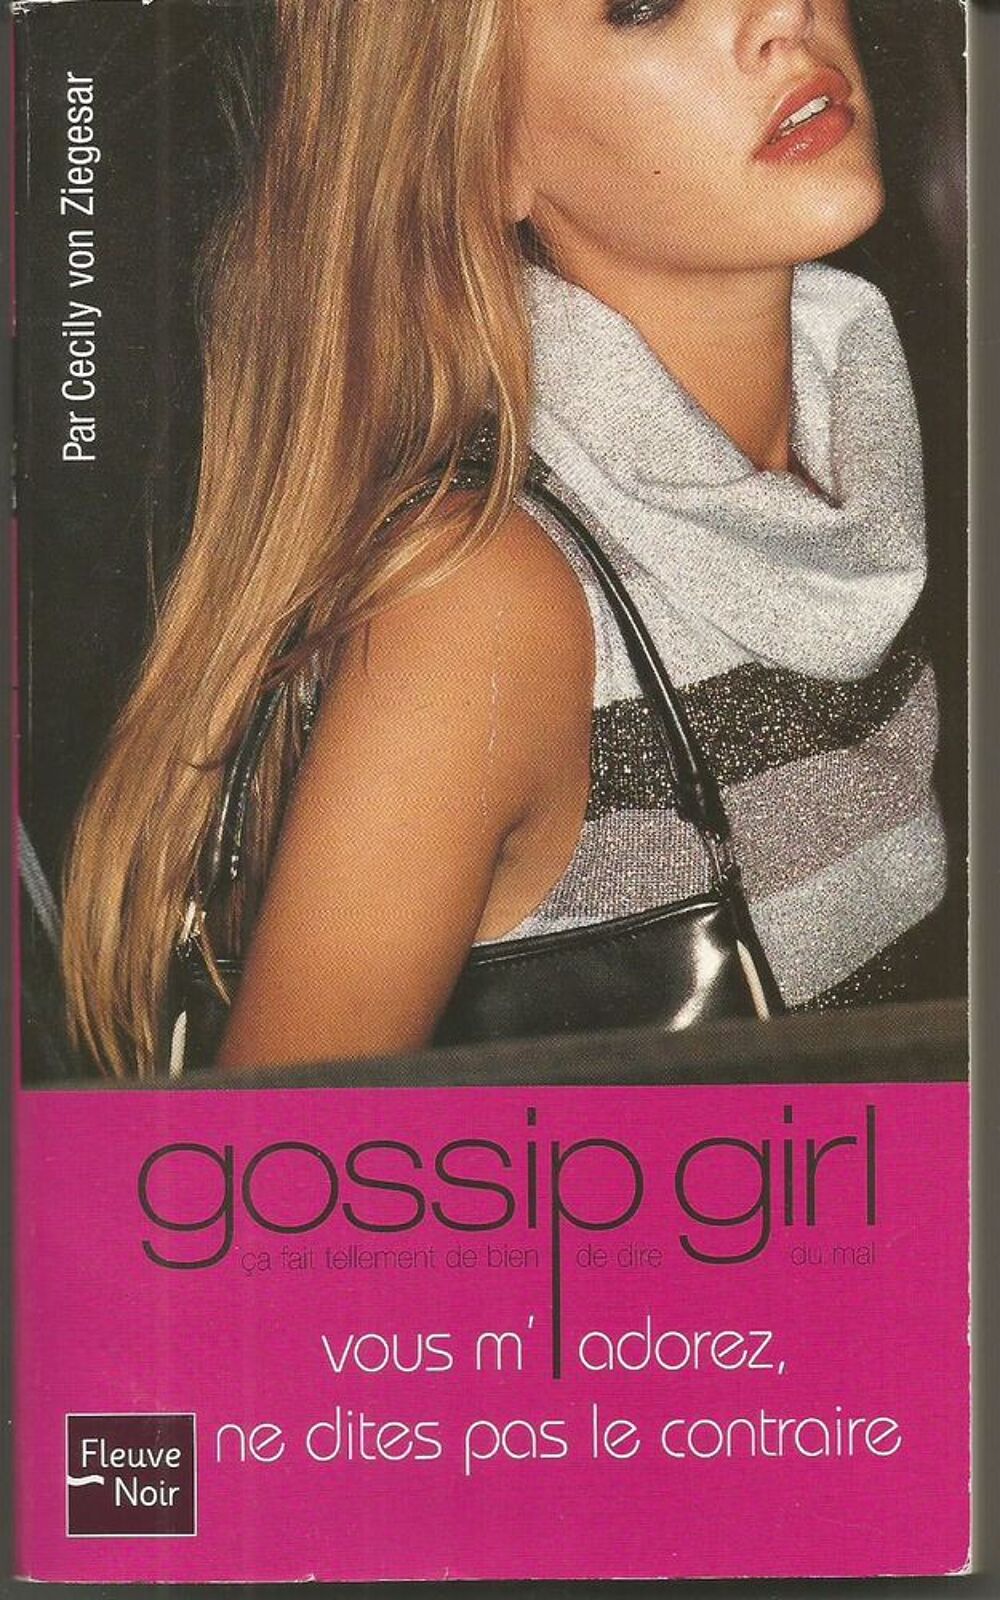 Gossip girl Tome 2 Vous m'adorez ne dites pas le contraire Livres et BD